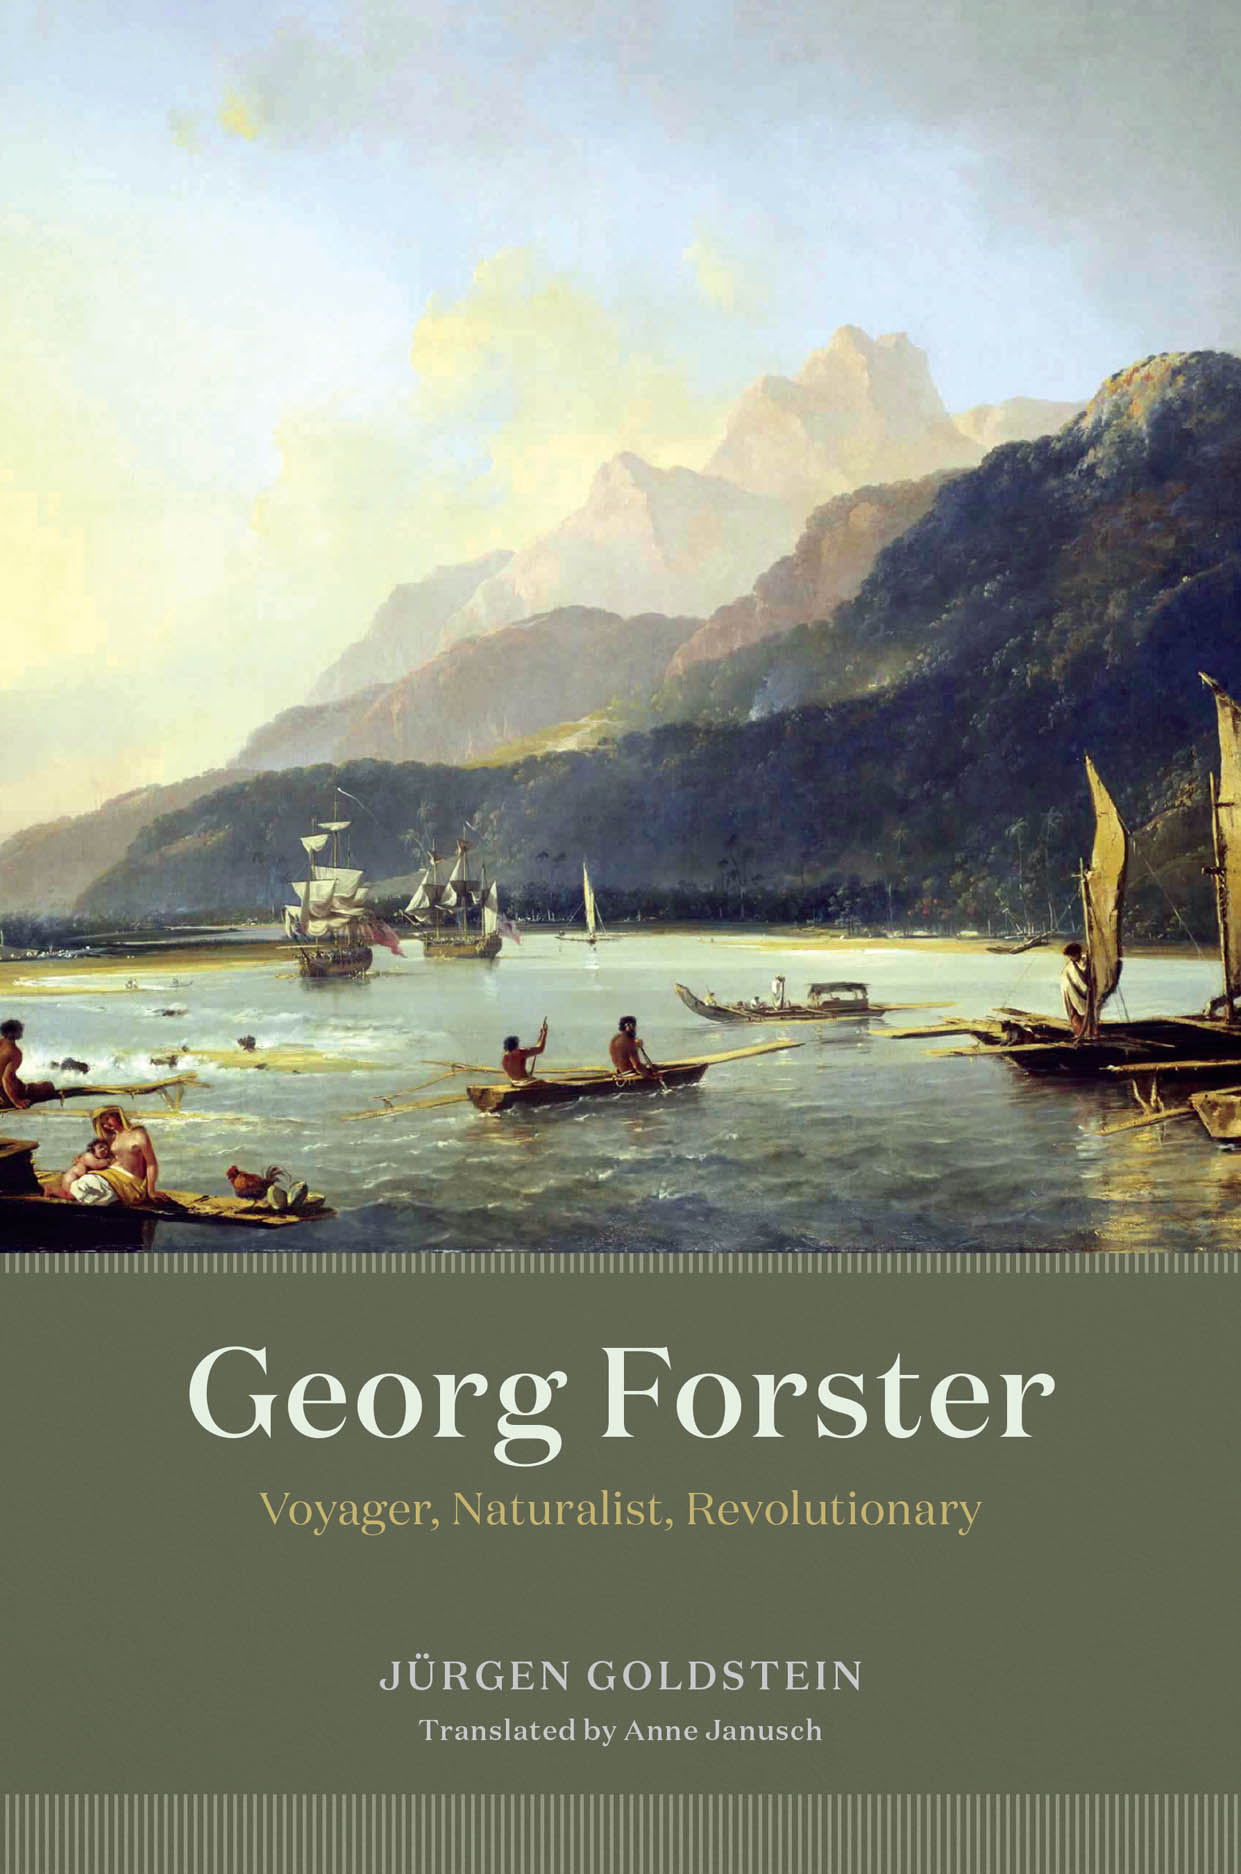 Georg Forster